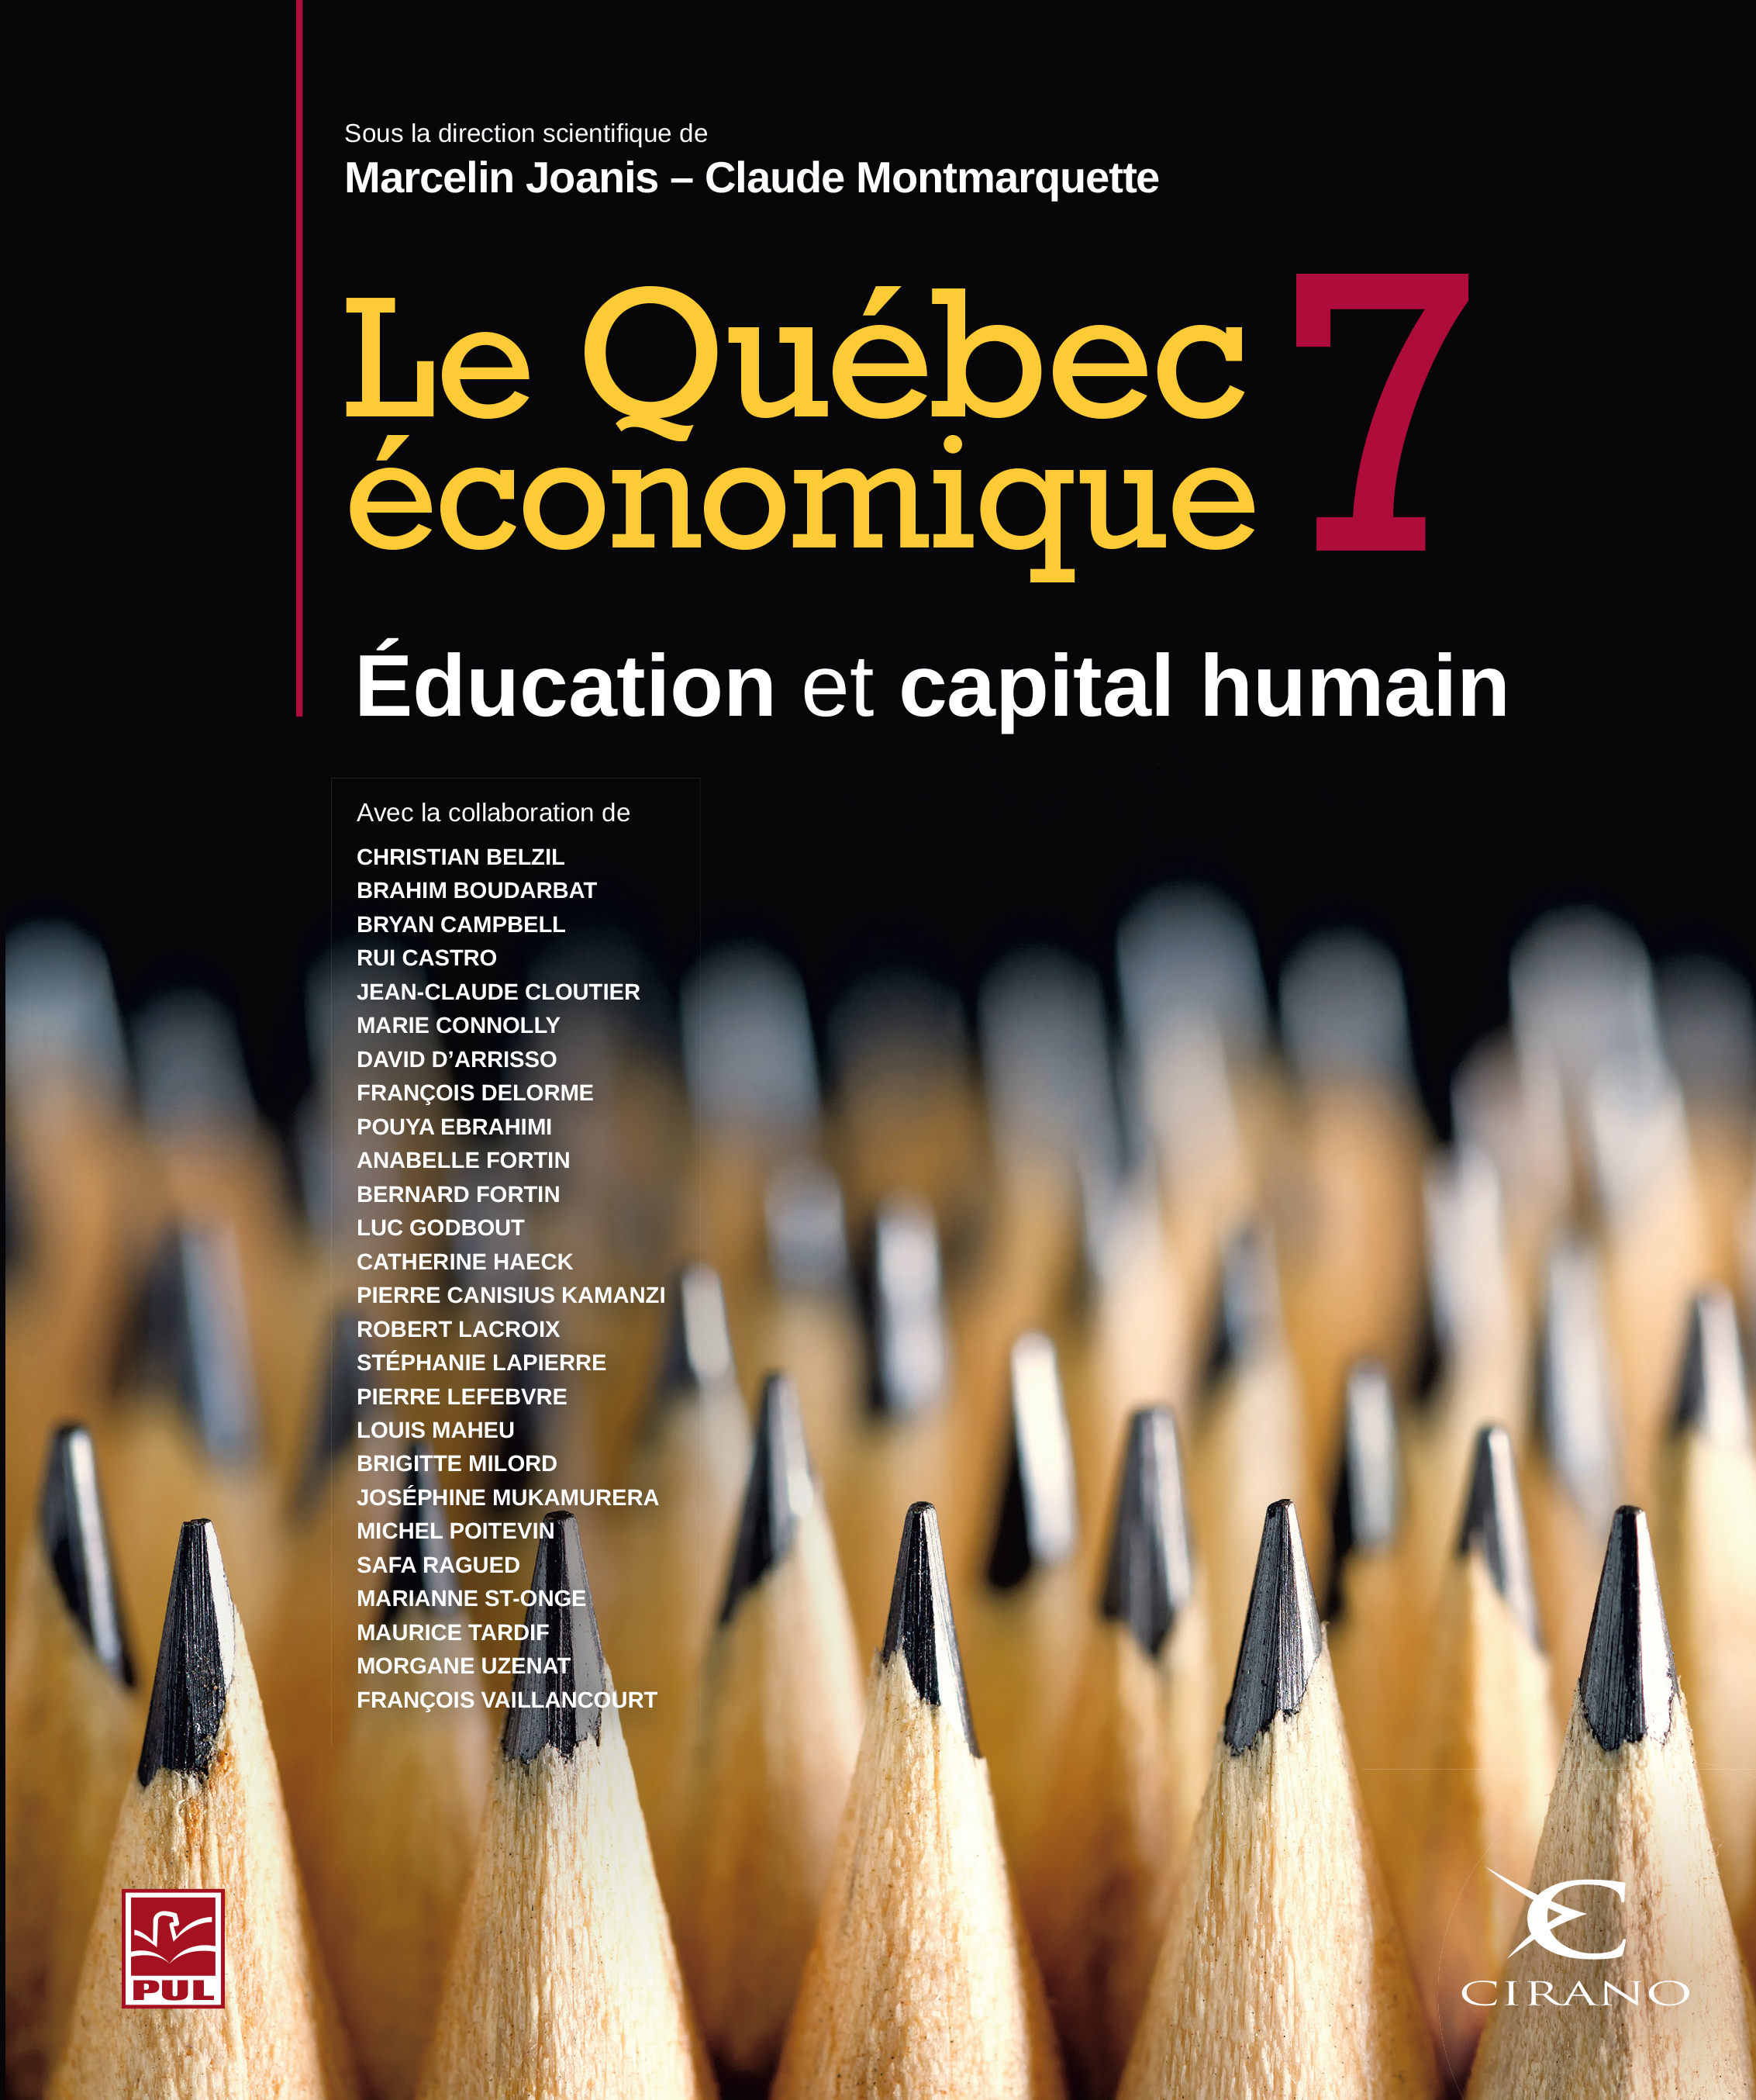 CIRANO /Sommaire / Le Québec économique 10 - Chapitre 6 - Pénuries de main-d'œuvre  au Québec : le cas de l'industrie de la restauration et de l'hôtellerie -  CIRANO